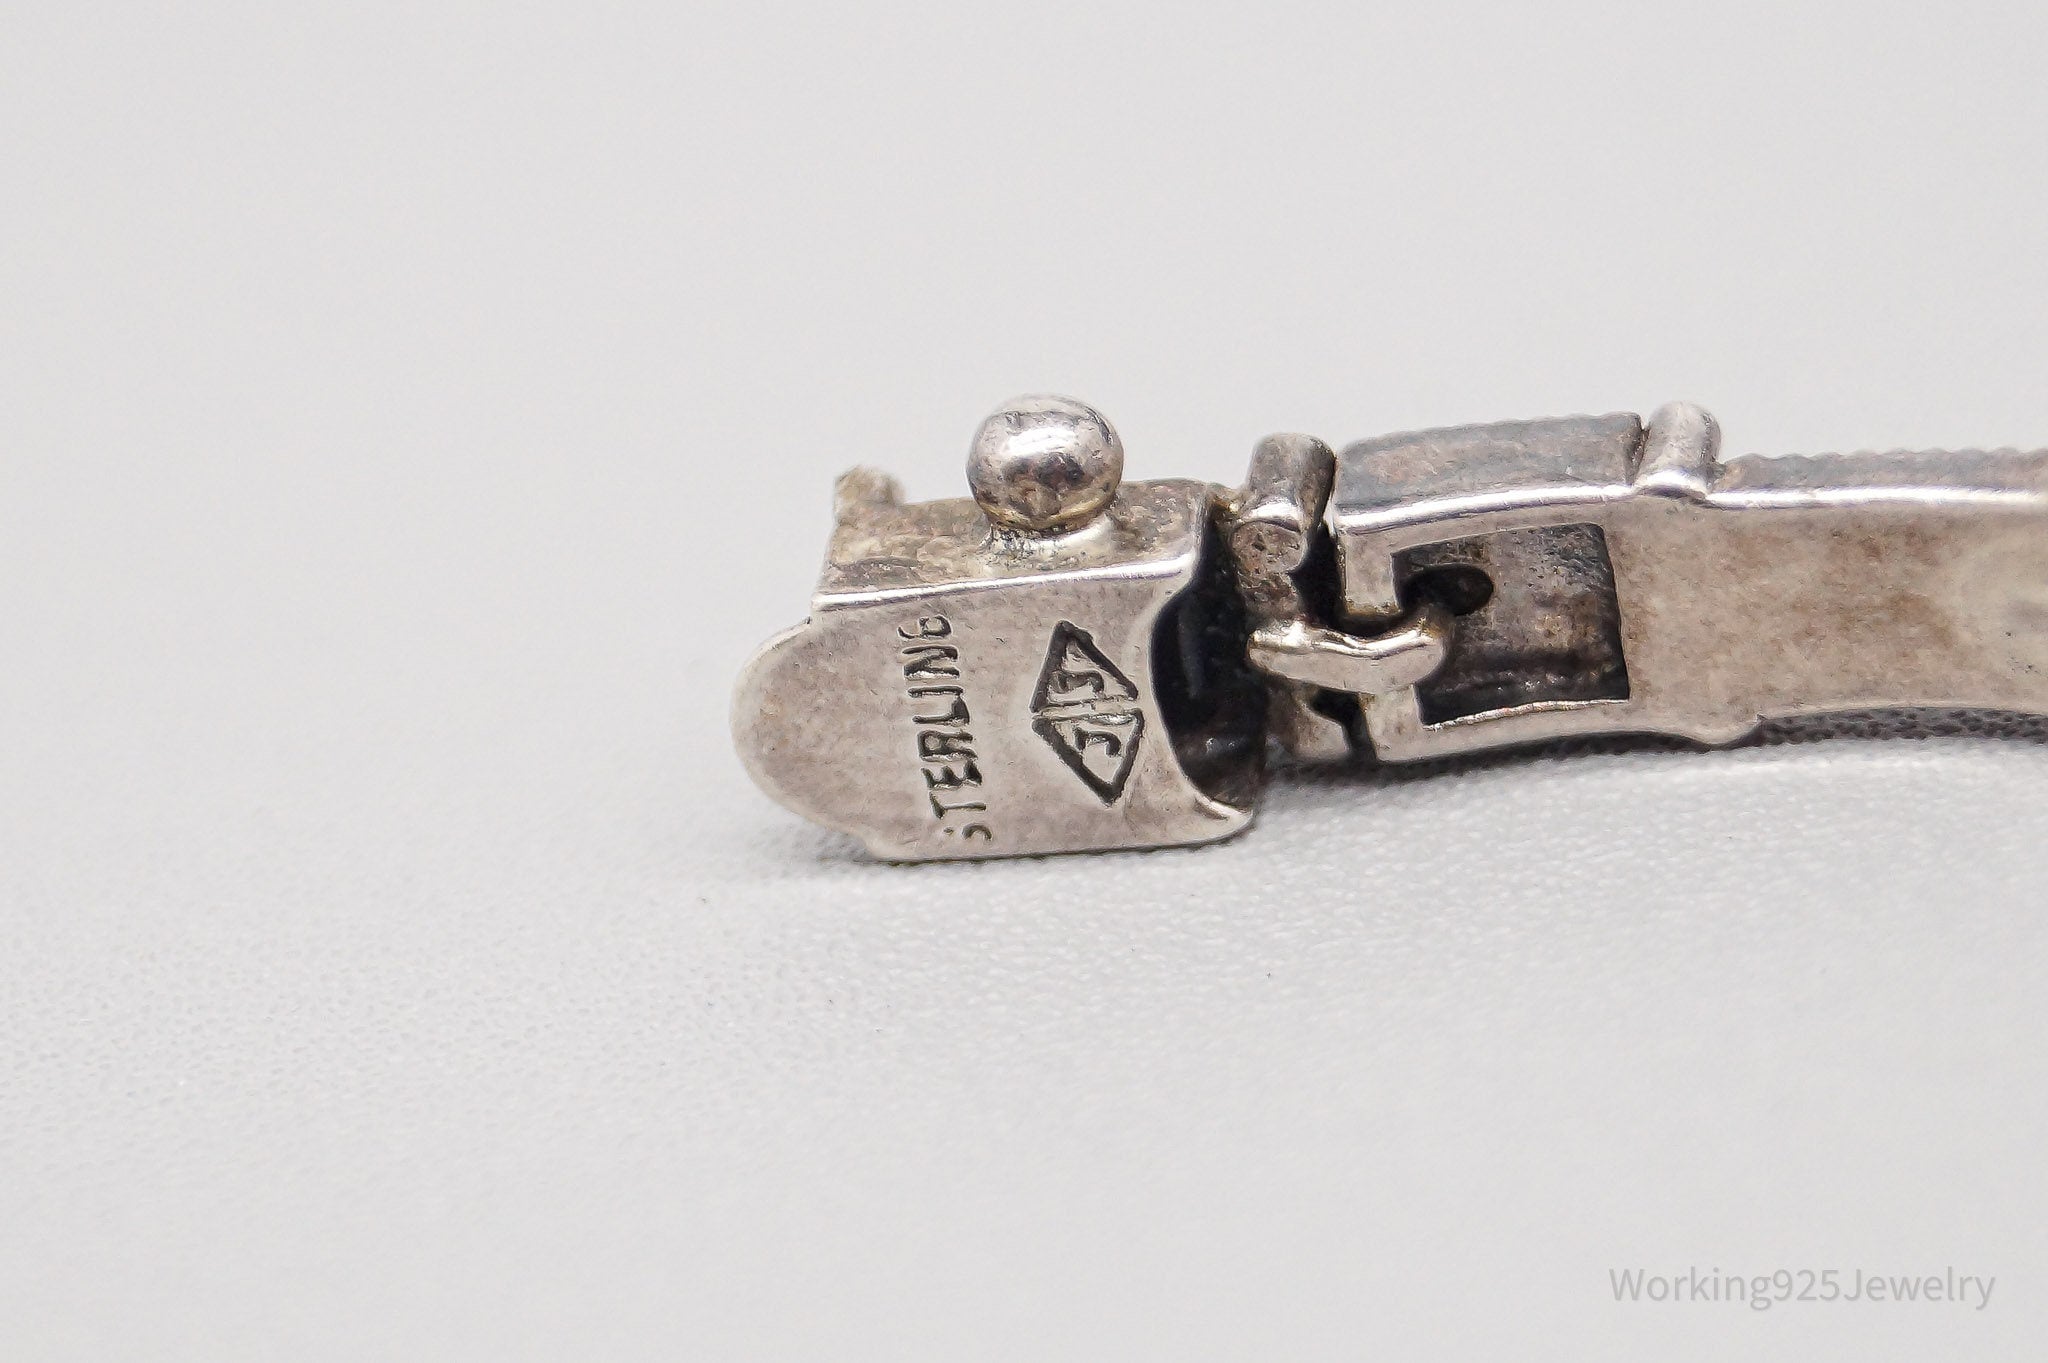 Vintage Judith Jack Marcasite Sterling Silver Art Deco Bracelet - 6 7/8"